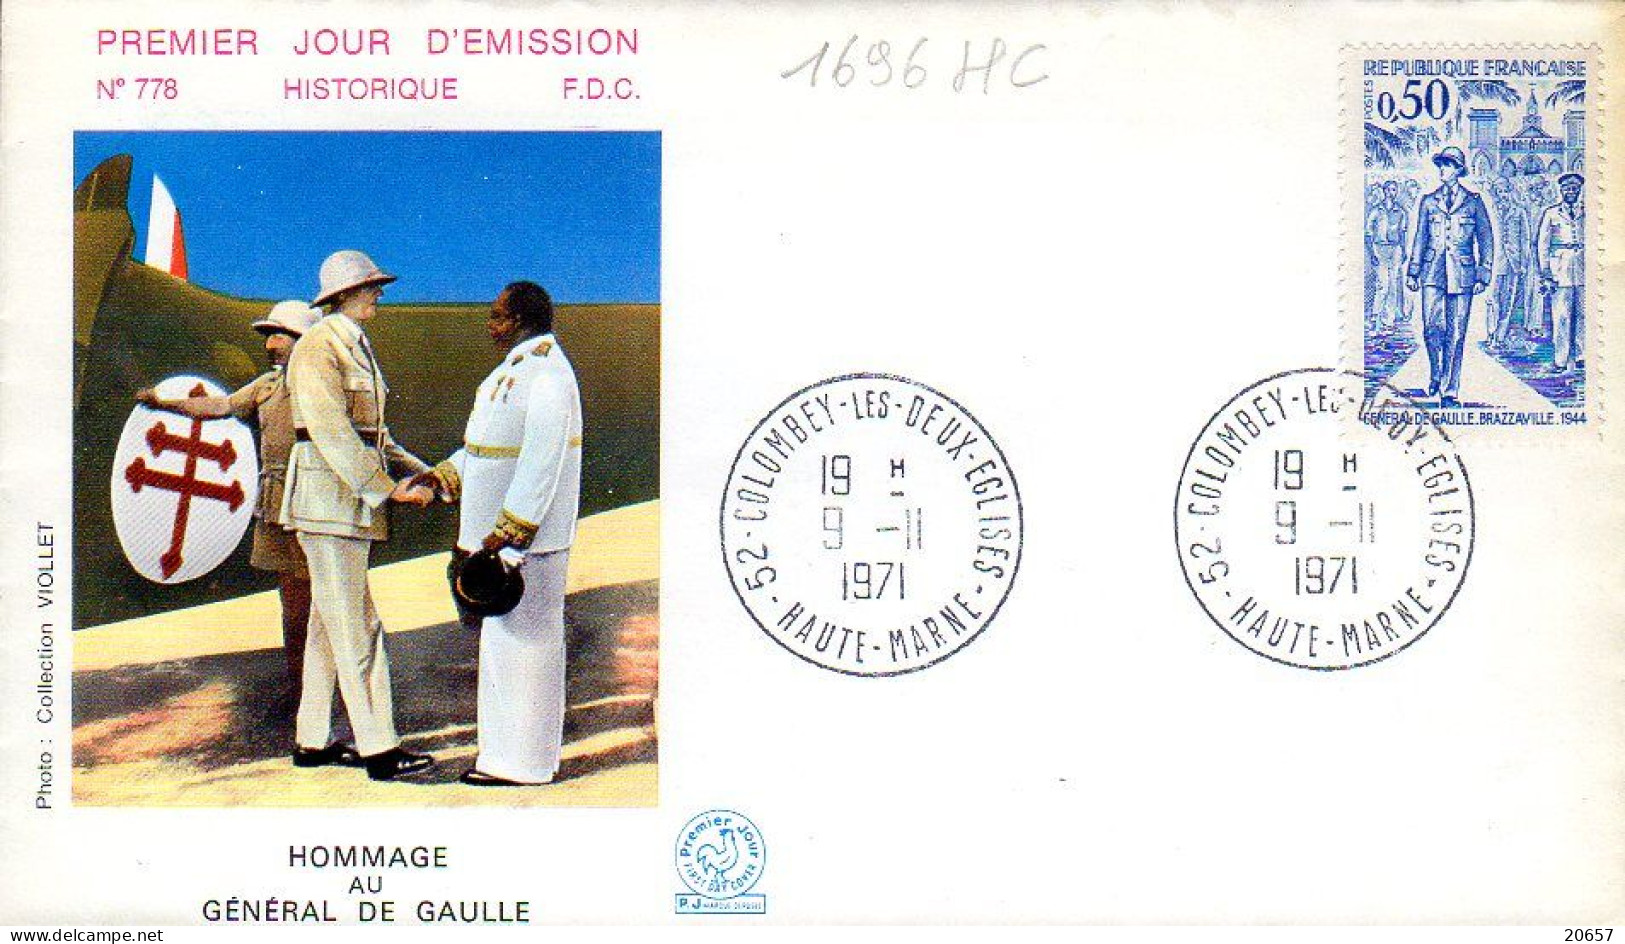 France 1696HC Fdc Hommage Au Général De Gaulle - De Gaulle (Général)